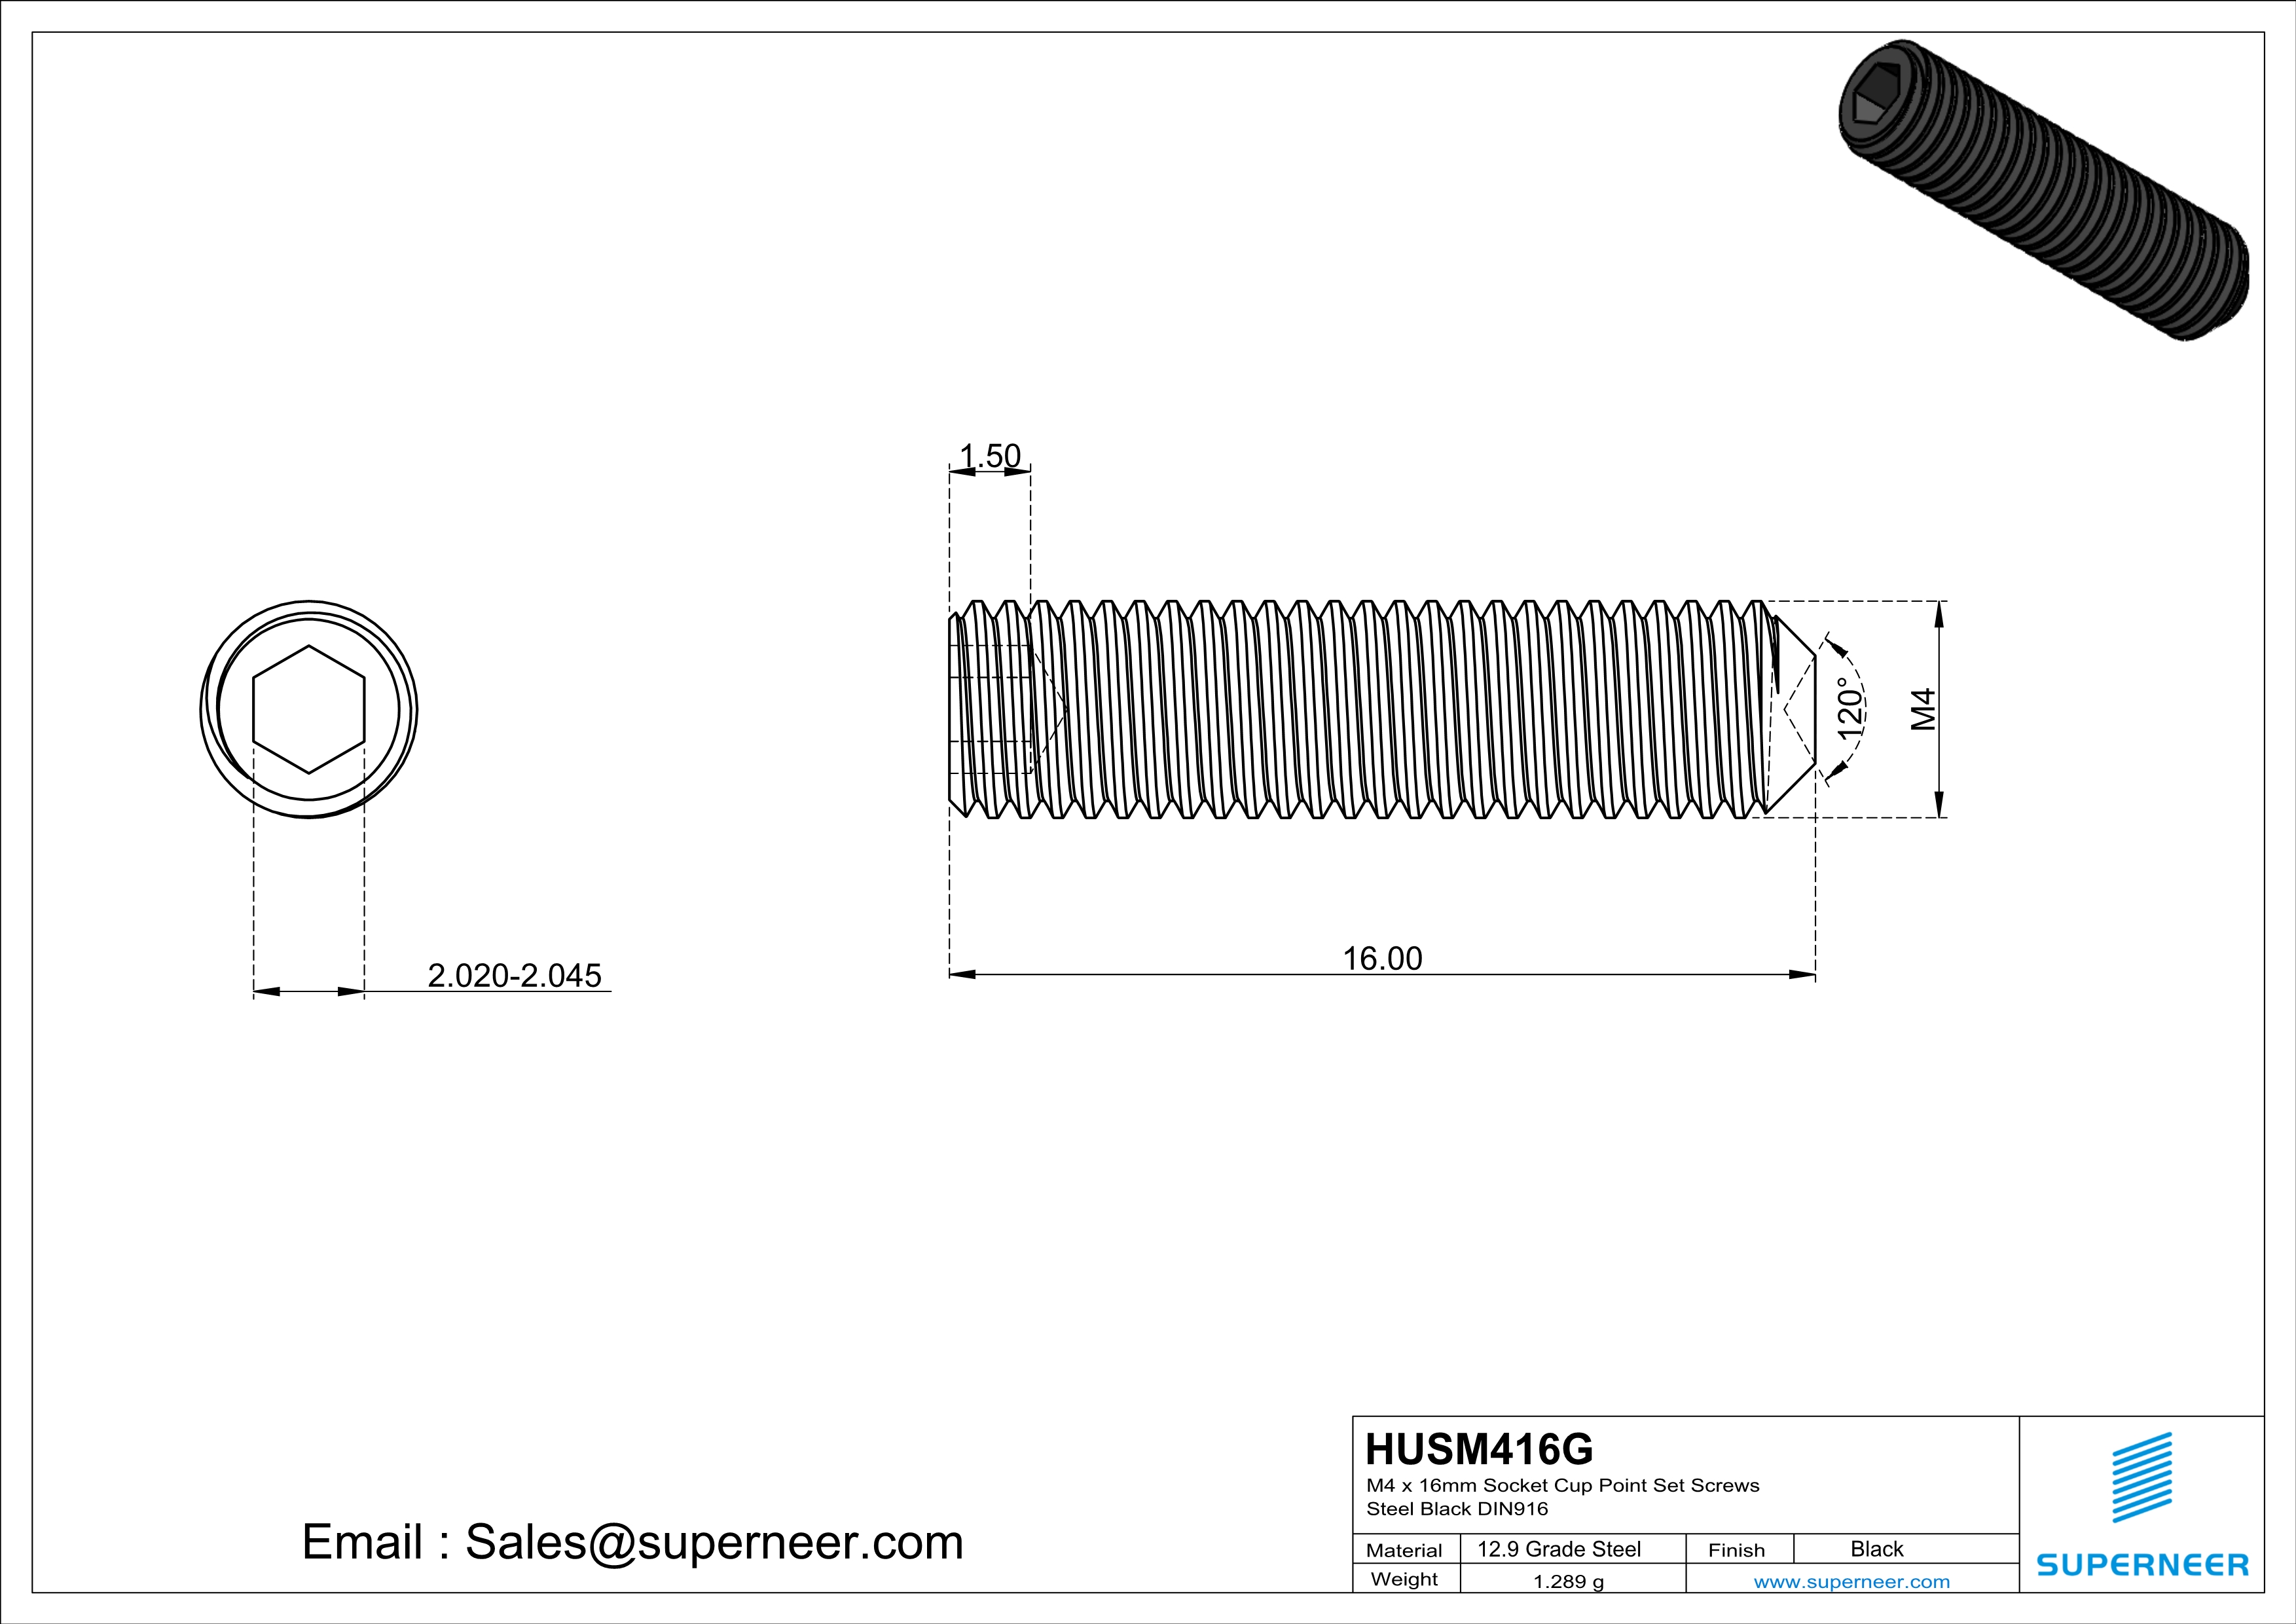 M4 x 16mm Socket Cup Point Set Screws 12.9 Carbon Steel Black DIN916